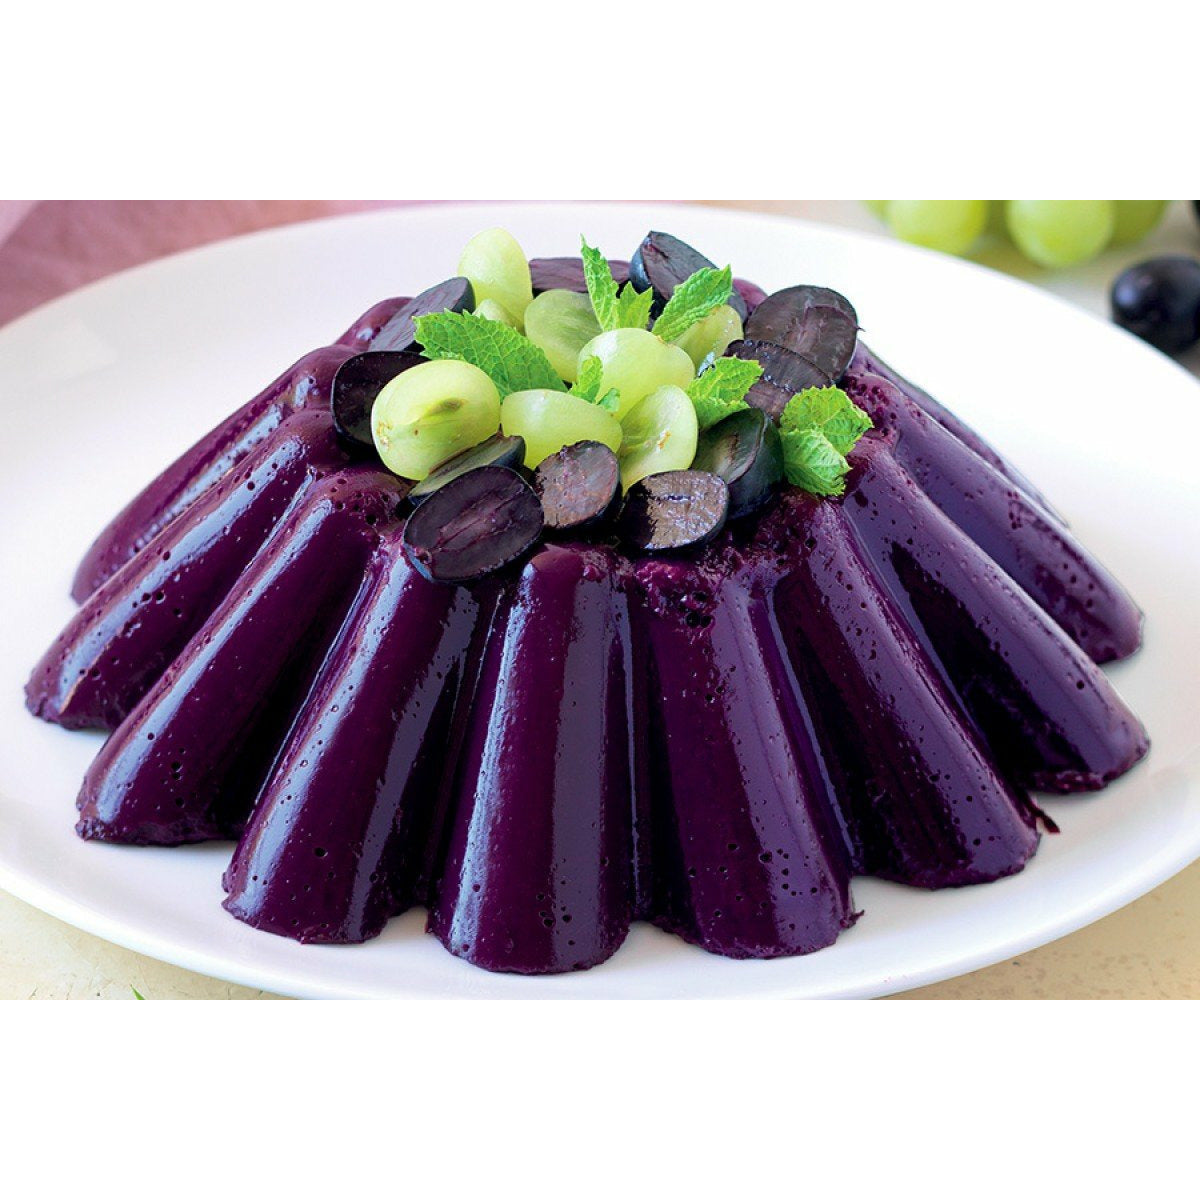 Une gelée mauve avec sur le haut des morceaux de raisins verts et noirs dans une assiette blanche